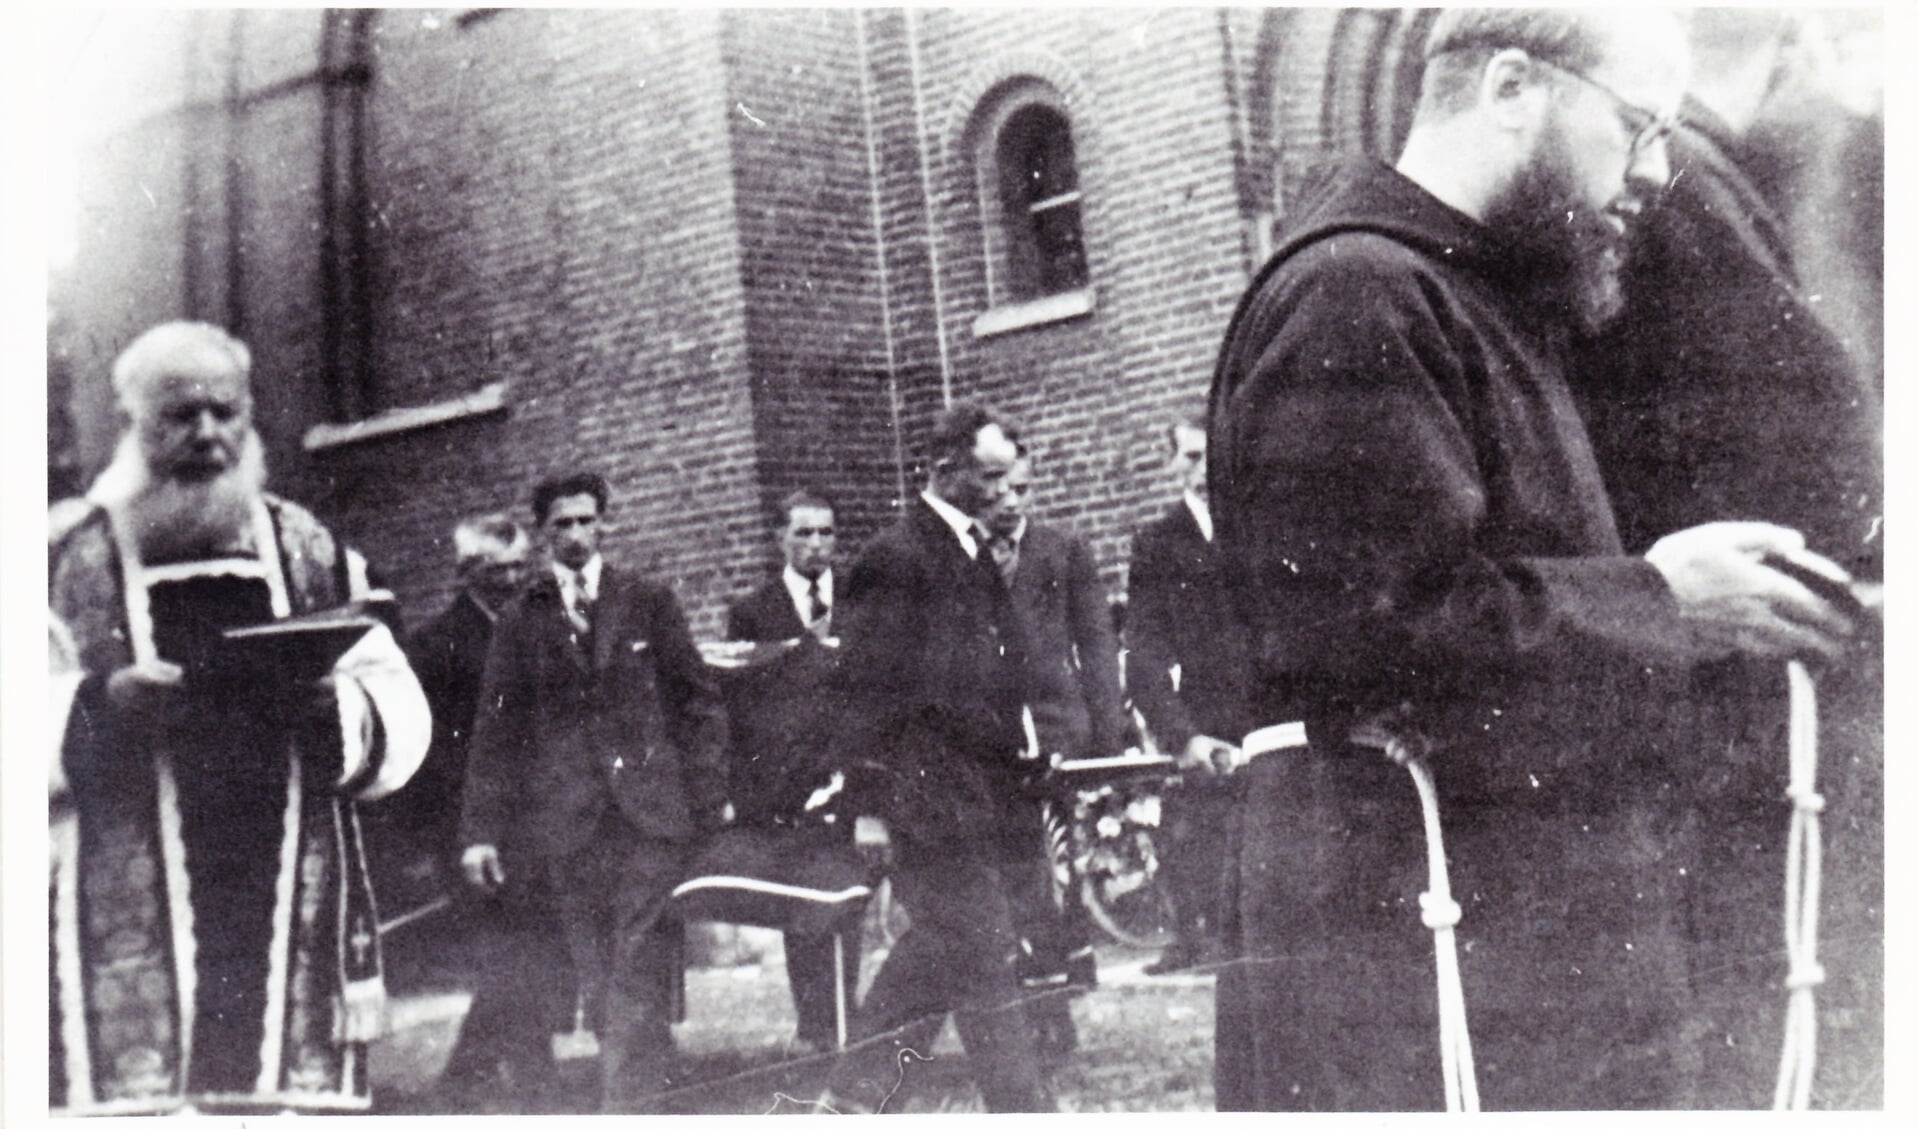 De begrafenisstoet verlaat met de overleden Familie Welles de R.K. Kerk naar de begraafplaats te Overasselt.